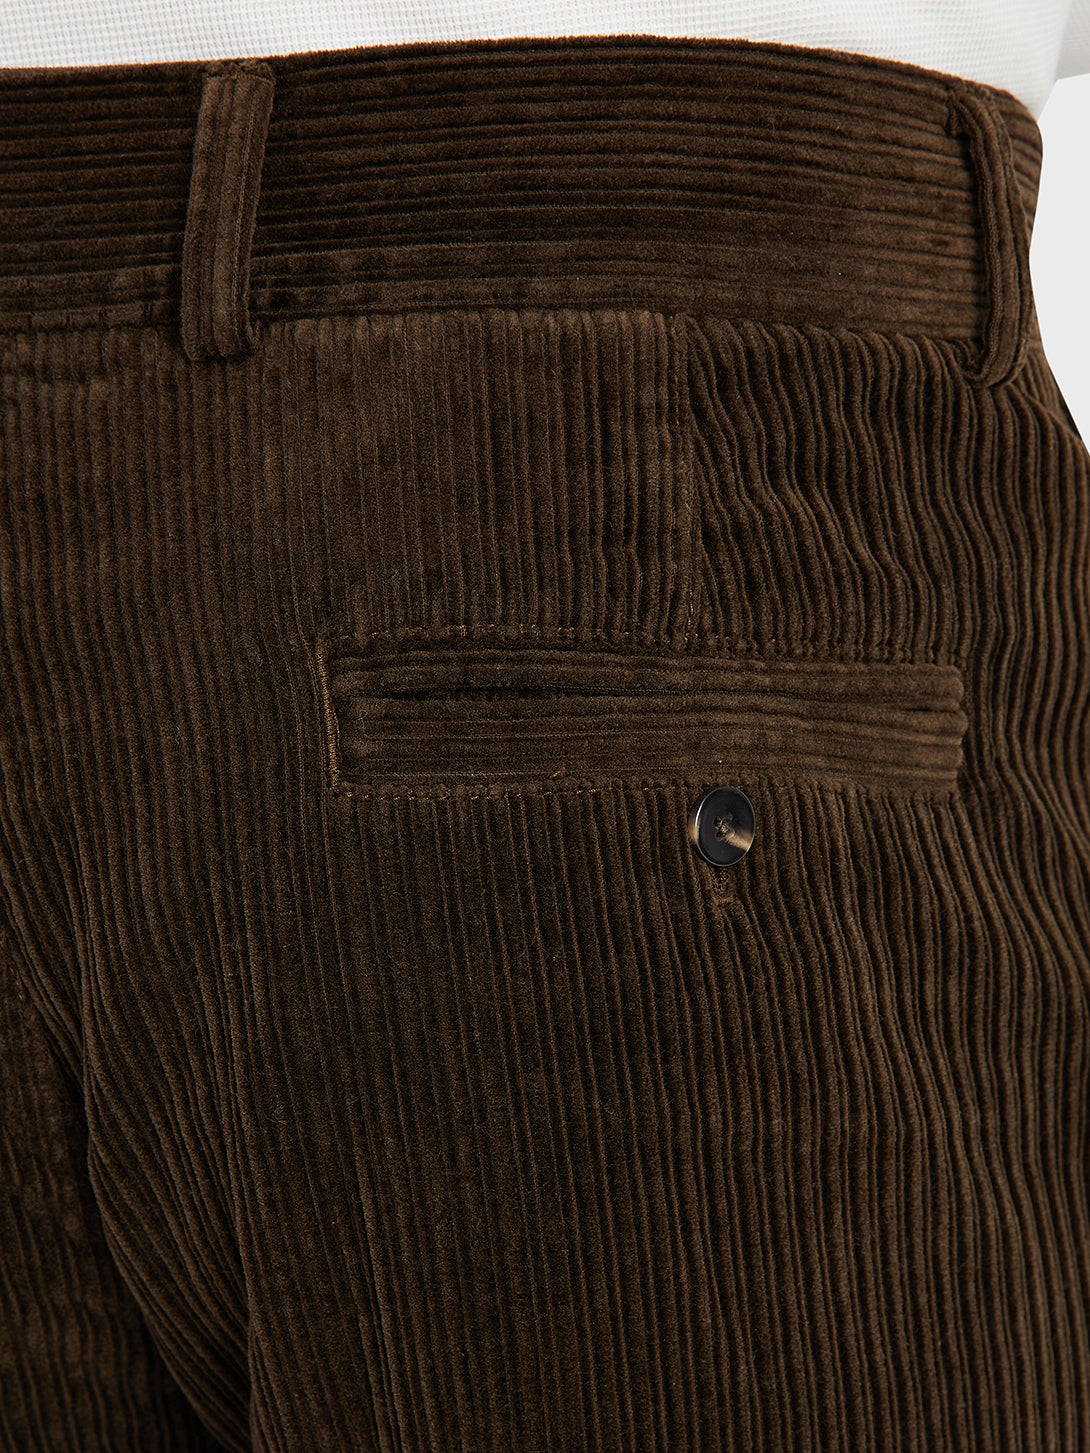 black friday deals ONS Clothing Men's CROSBY CORDUROY PANTS in DK BROWN